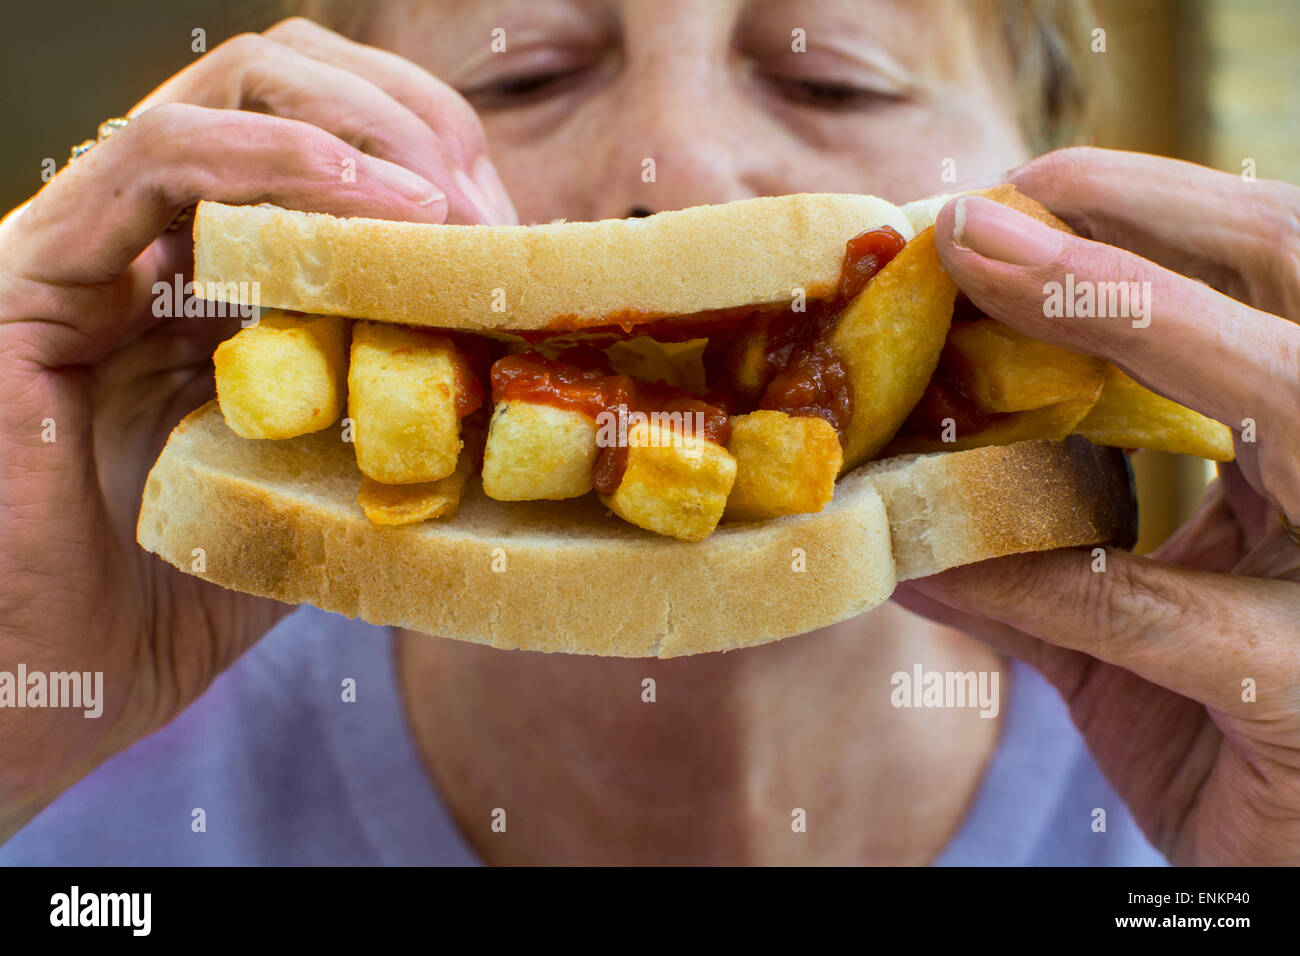 Eine Kartoffel-Chips-Sandwich, allgemein bekannt als ein Chip butty im Vereinigten Königreich, von einer Frau gefressen Stockfoto